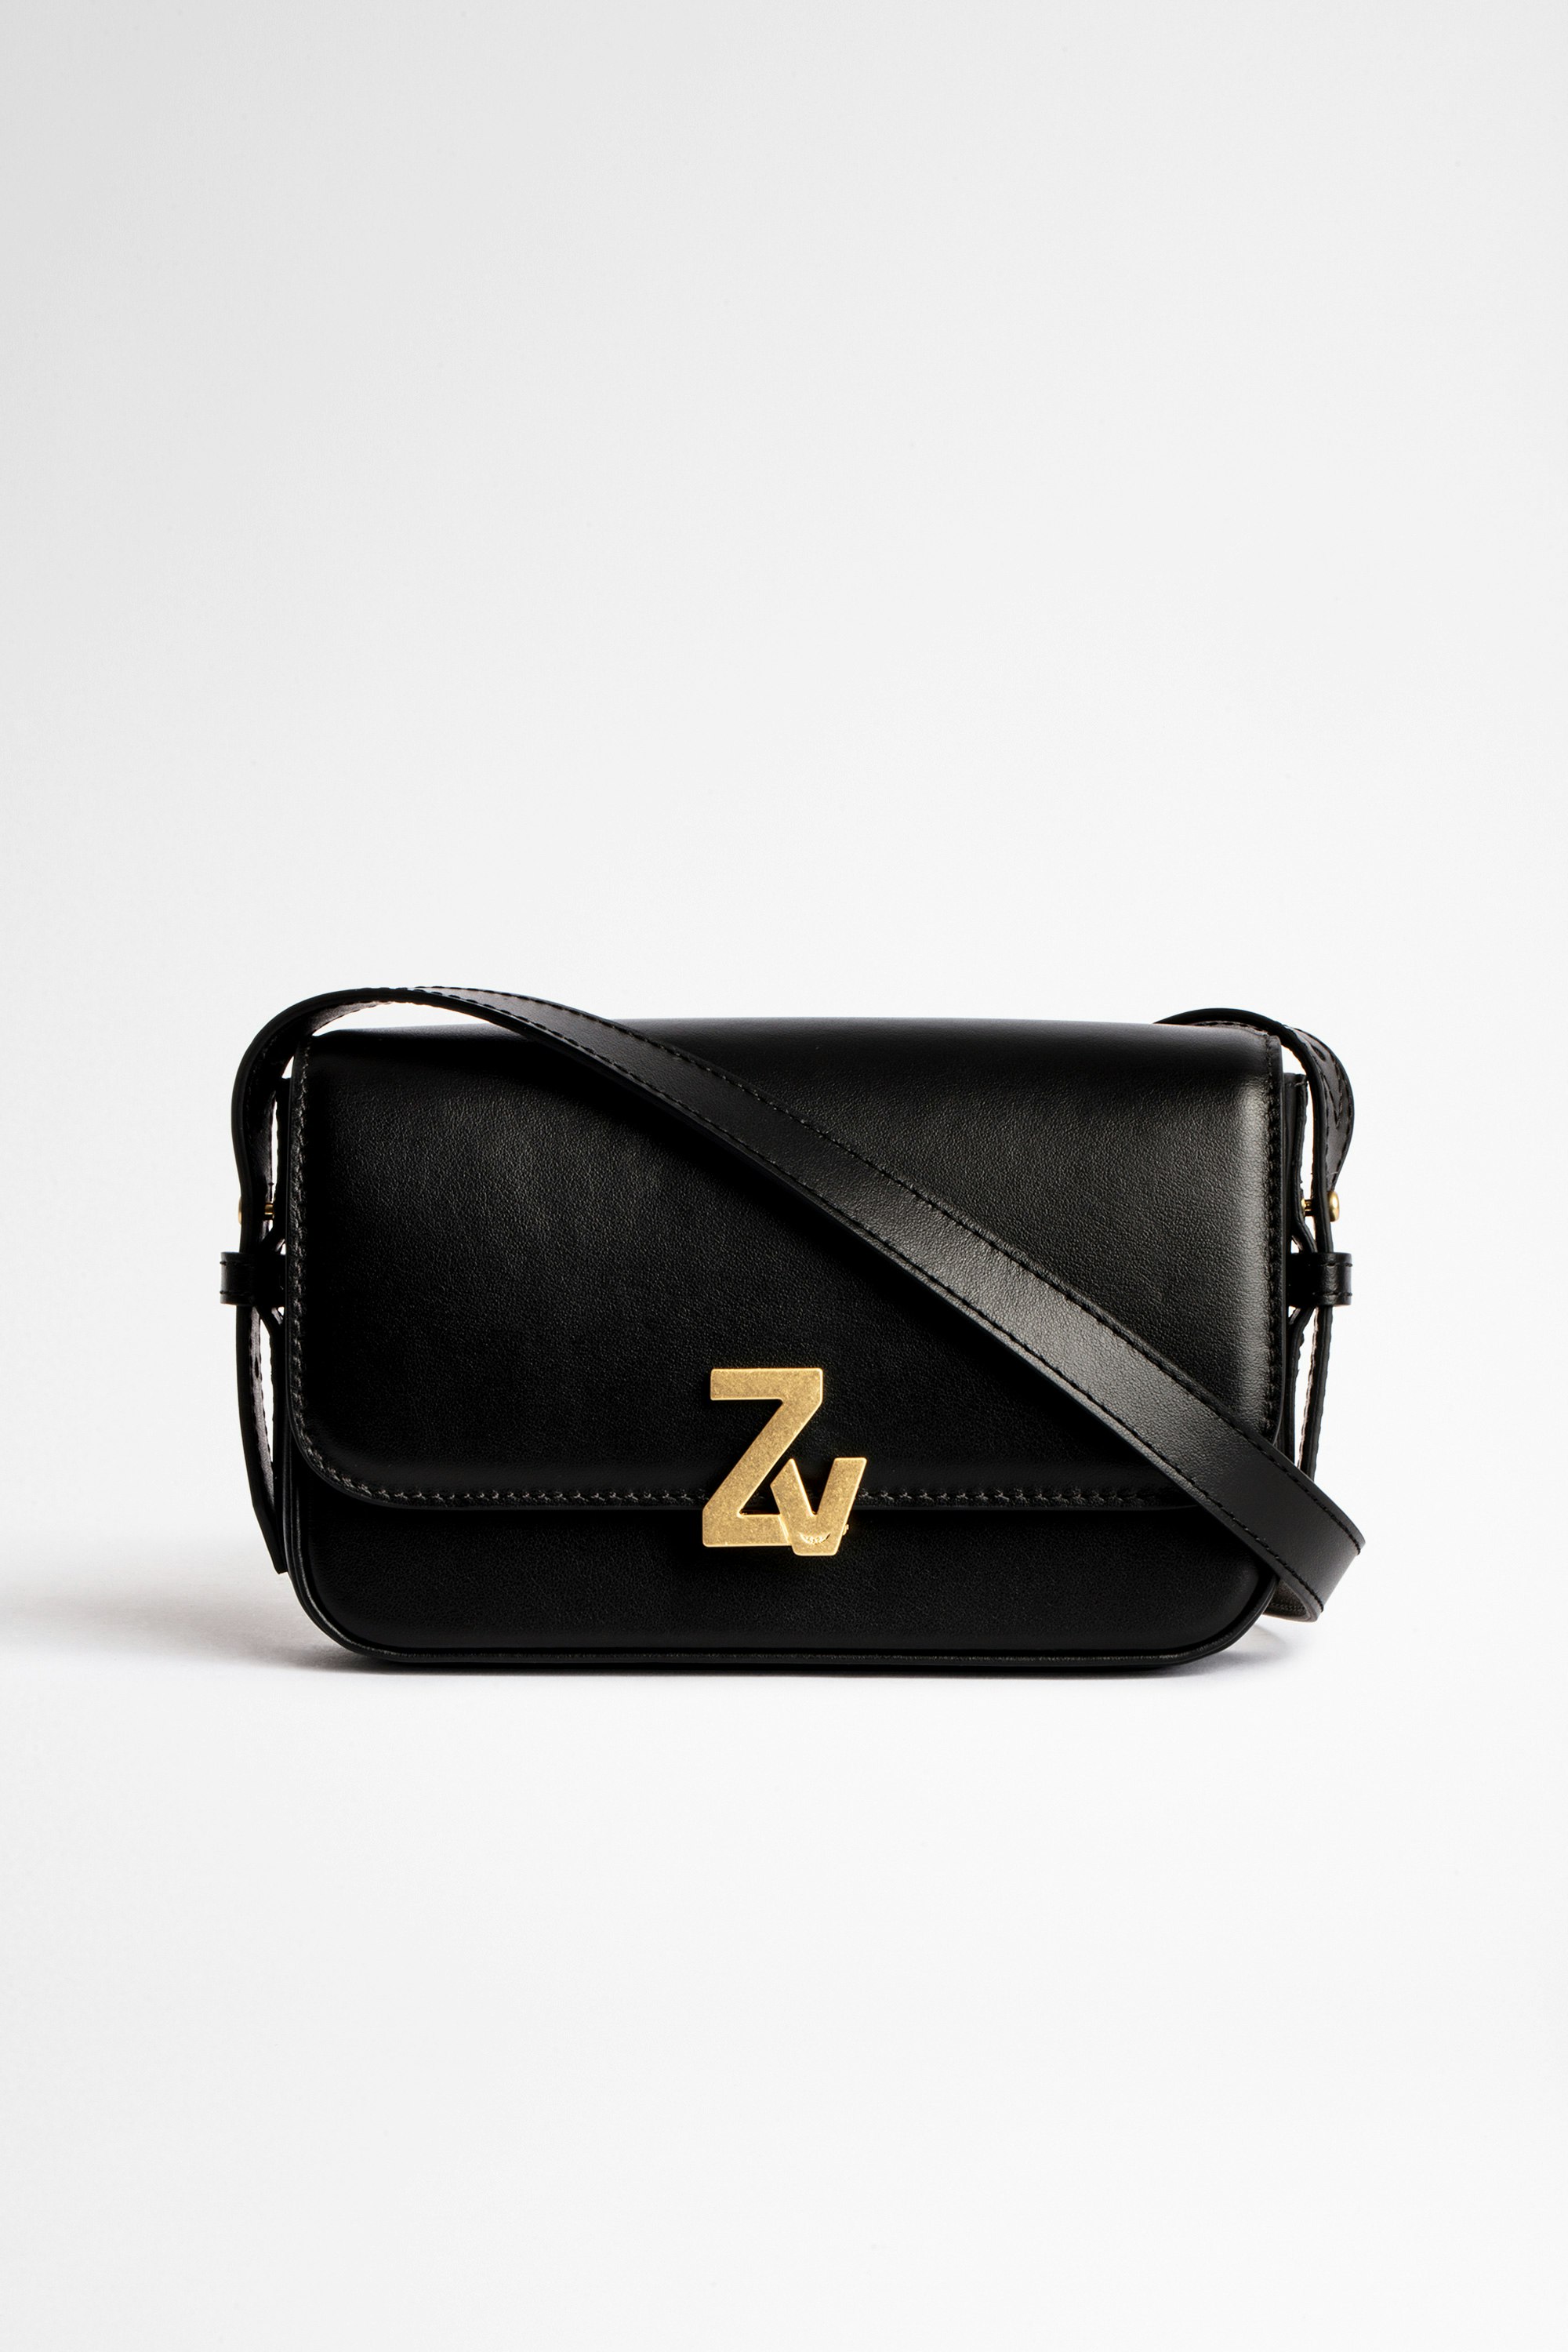 Tasche ZV Initiale Le Mini Damen-Handtasche Le Mini aus schwarzem Glattleder